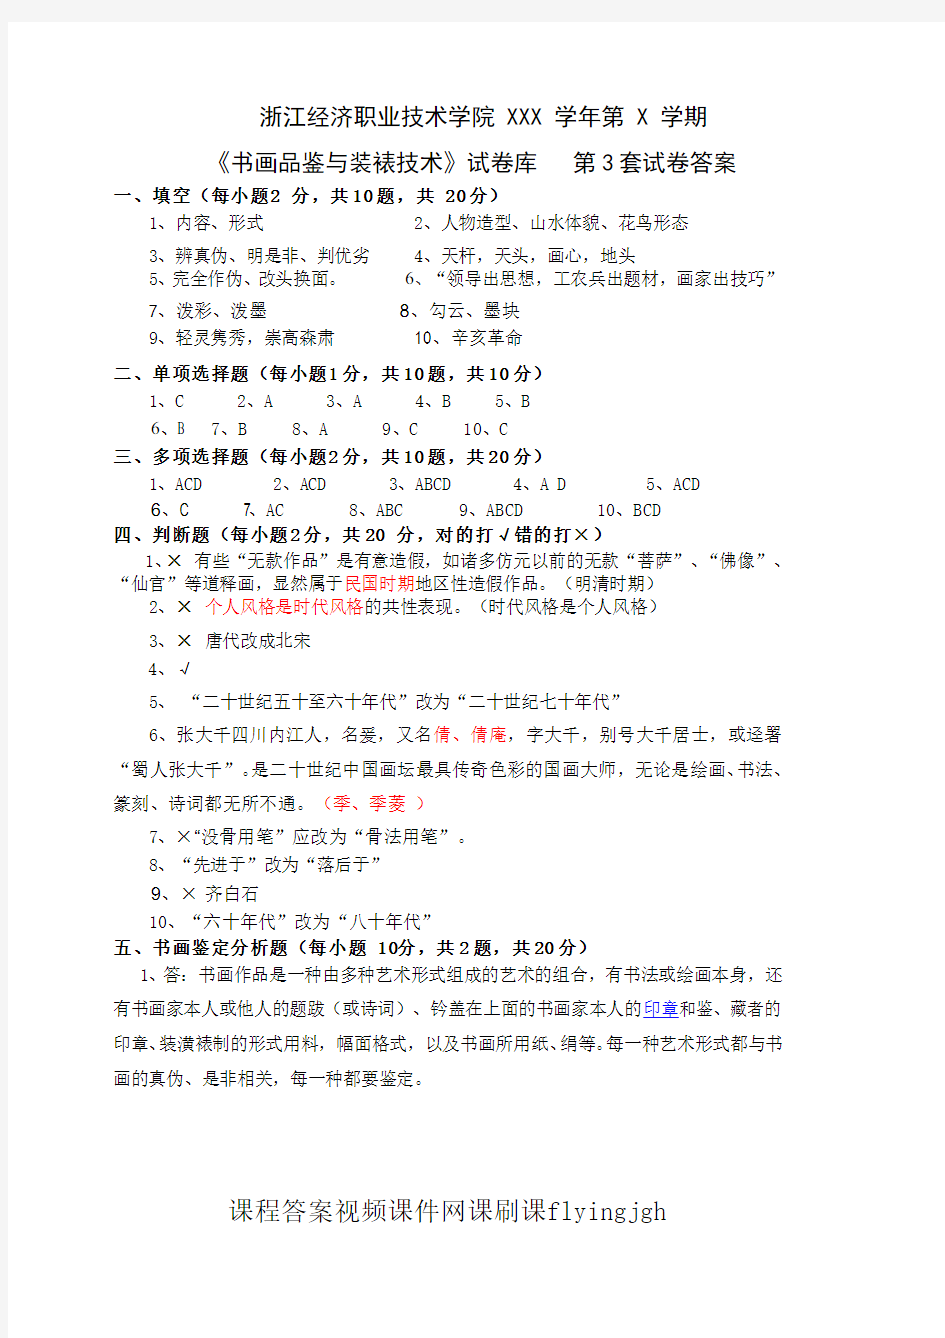 中国大学MOOC慕课爱课程(14)--《书画品鉴与装裱技术》期末考试卷第3套答案网课刷课